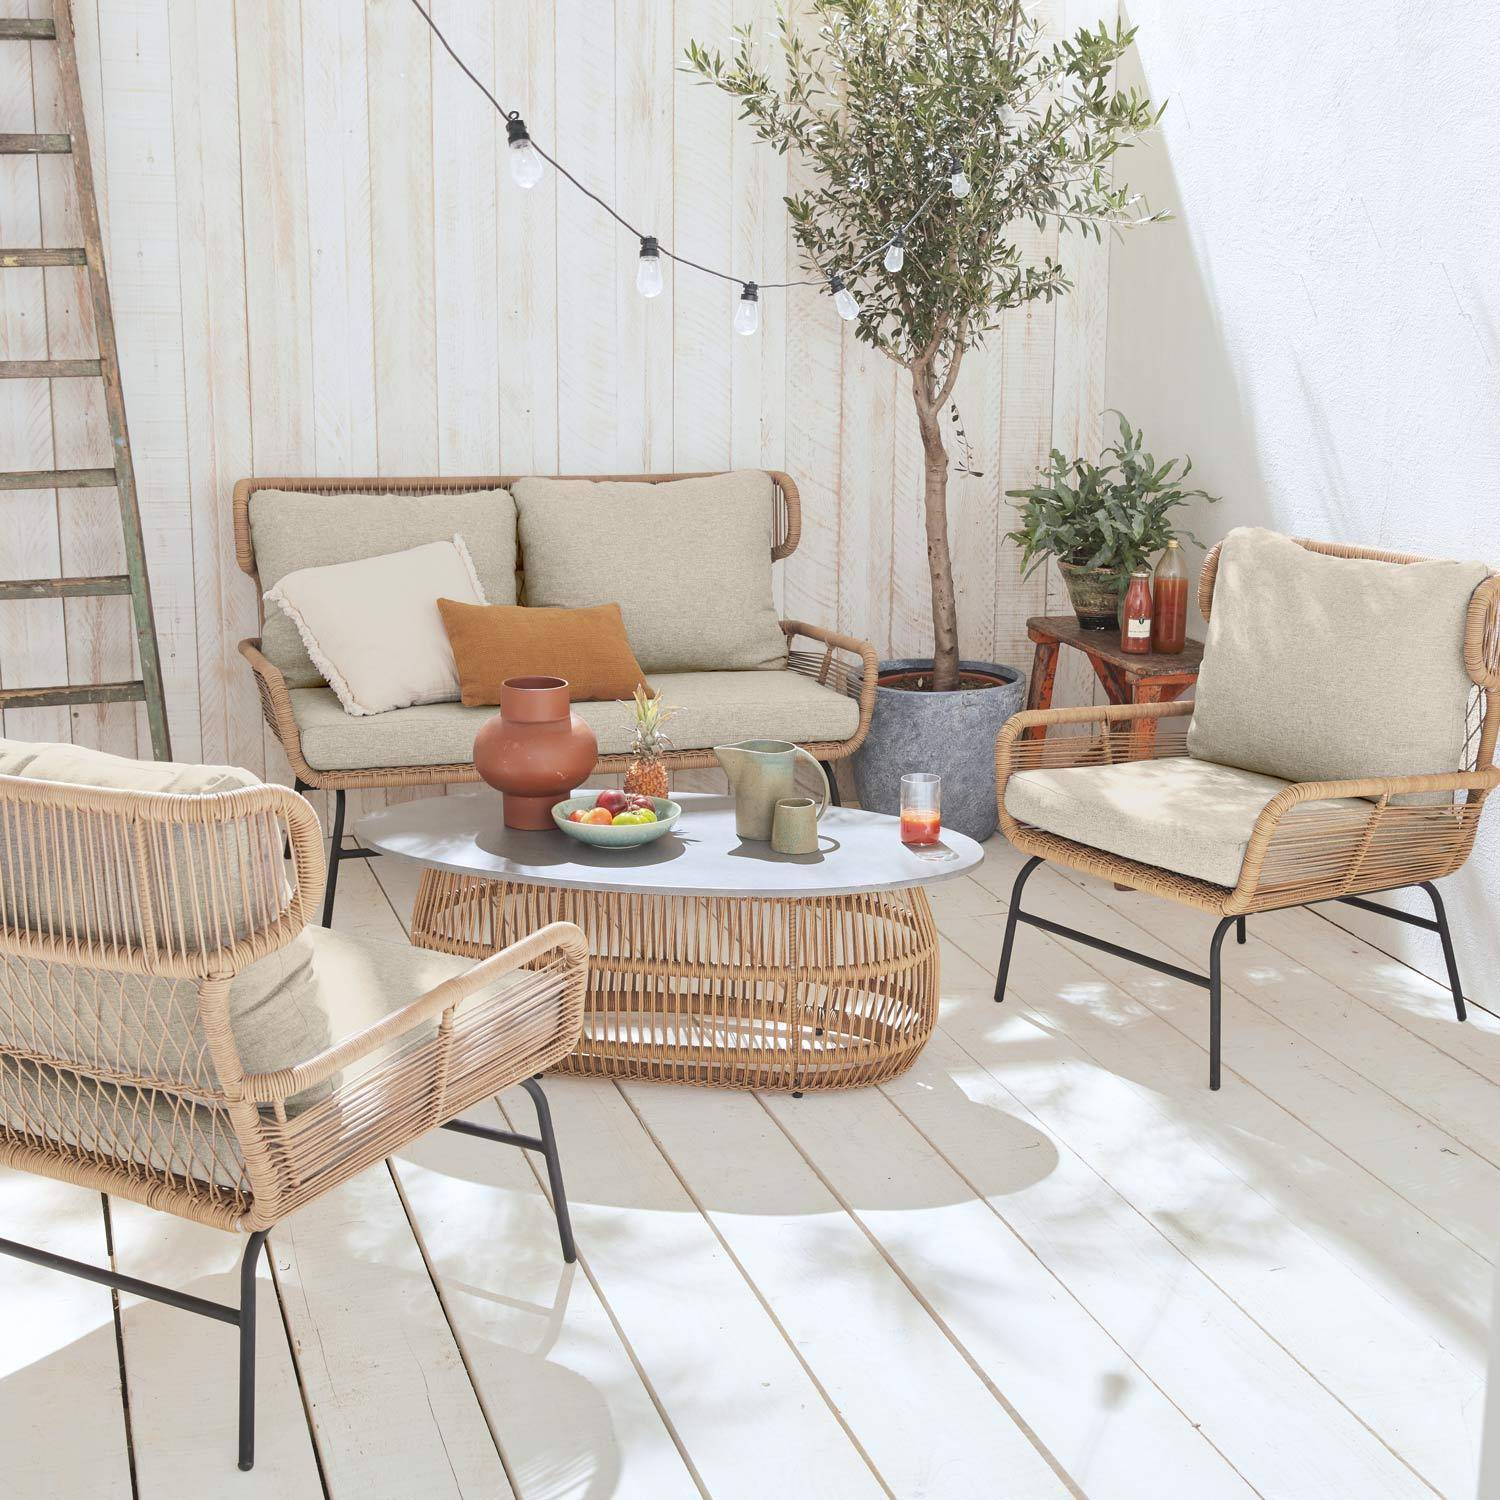 BALI niedrige Gartengarnitur 4 Sitze - Set Sofa mit 2 Sitzen und 2 Sesseln mit 1 ovaler Beistelltisch, Kunststoffrattan mit Rattan-Effekt, beigefarbene Kissen Photo5